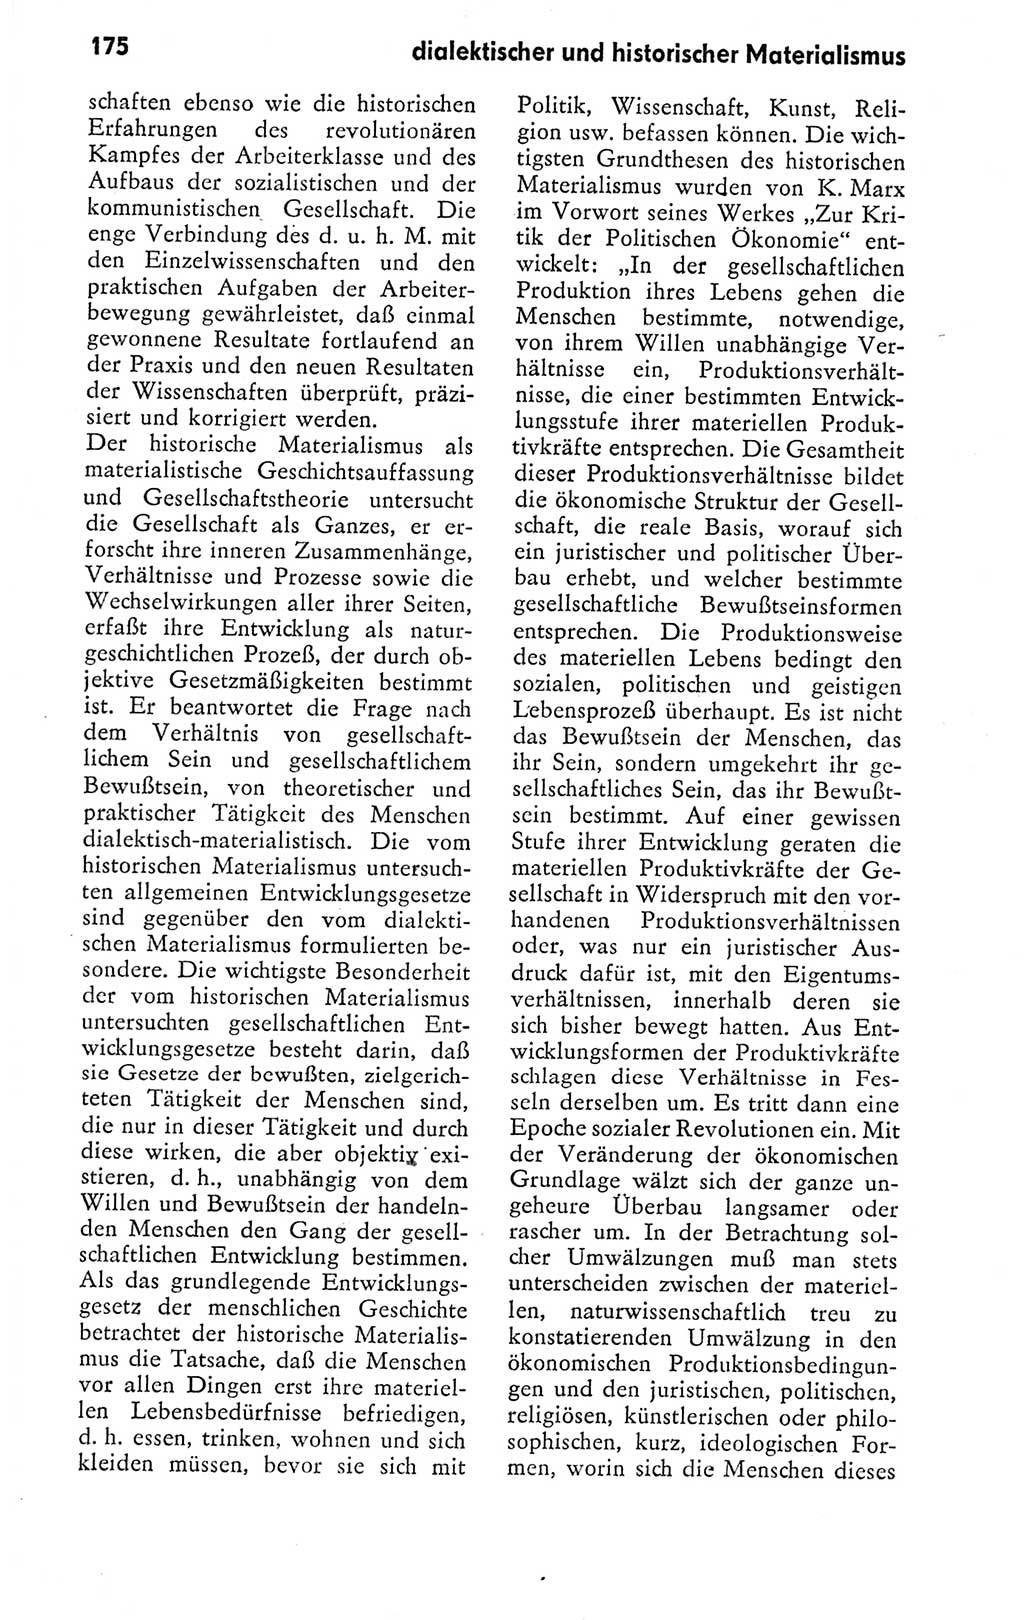 Kleines politisches Wörterbuch [Deutsche Demokratische Republik (DDR)] 1978, Seite 175 (Kl. pol. Wb. DDR 1978, S. 175)